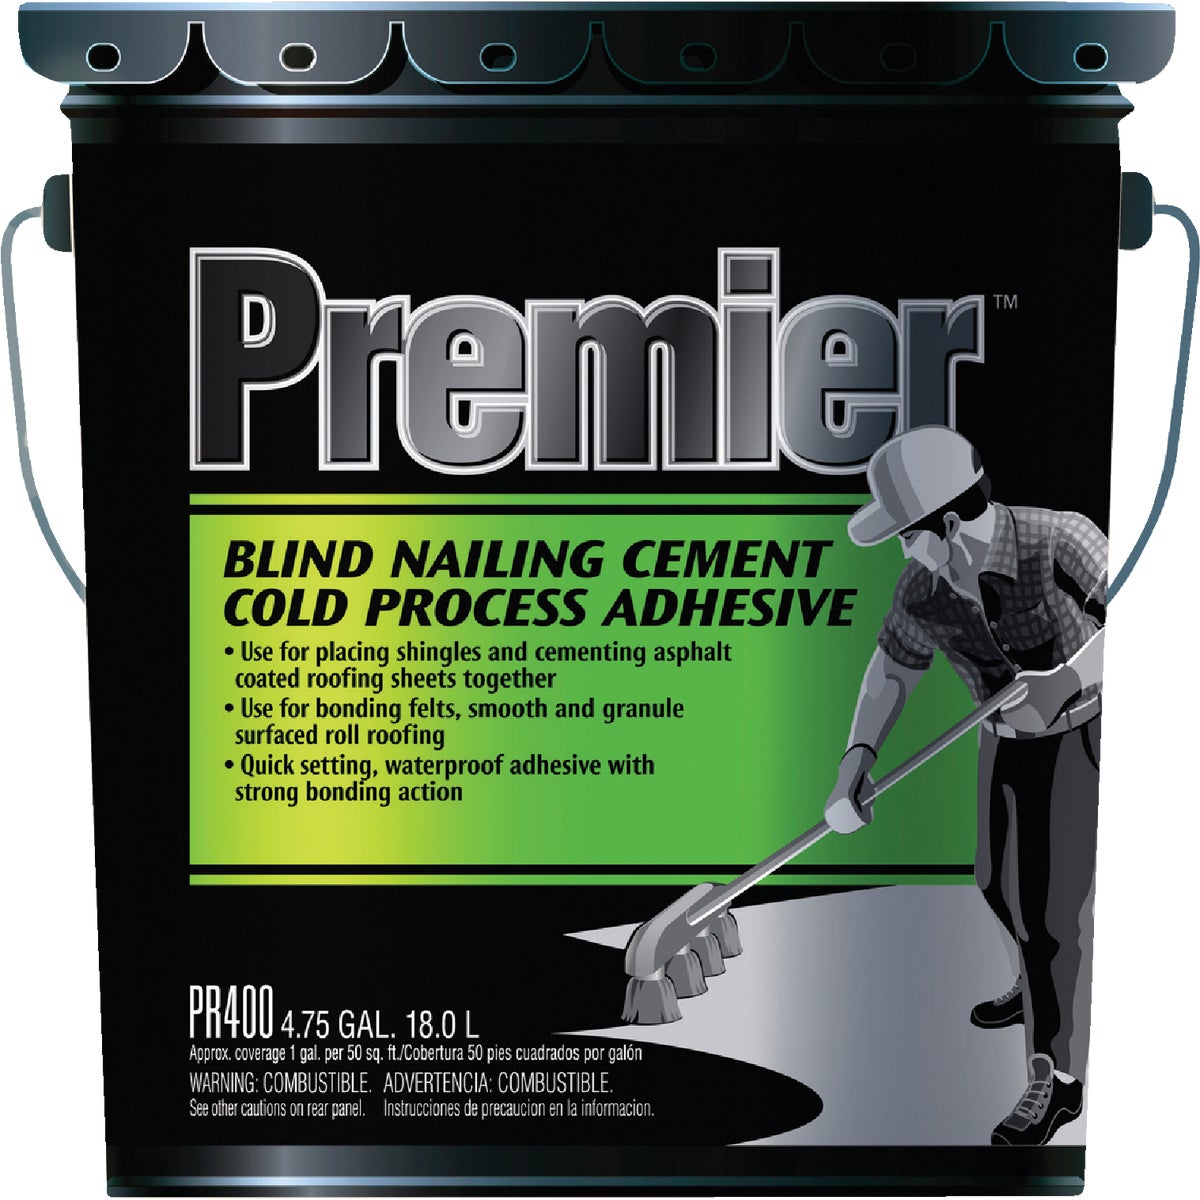 PR400070 Premier 400 Cold Process Adhesive cement lap